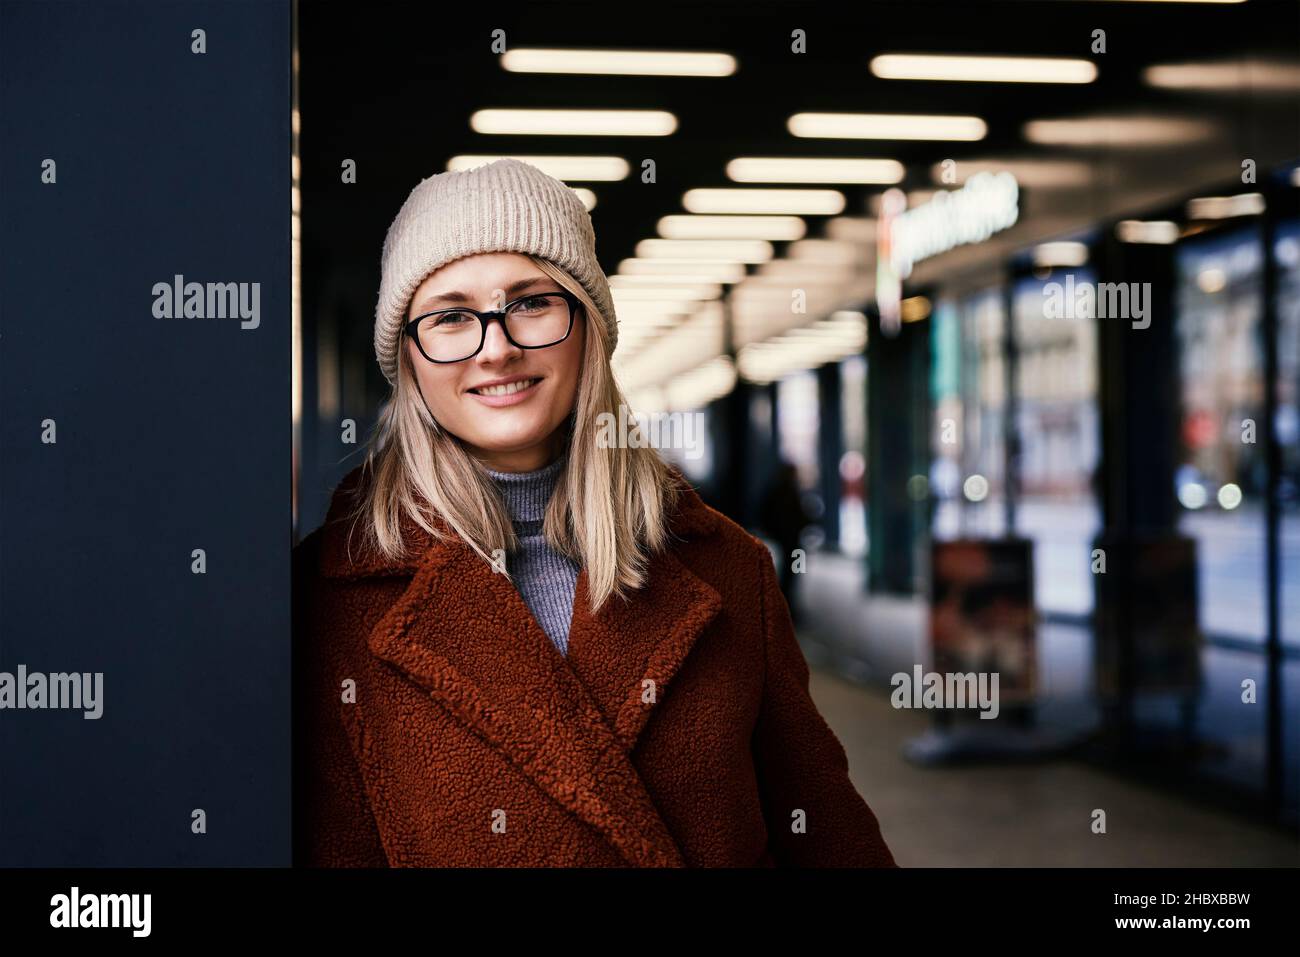 Portrait d'une belle femme souriante dans des lunettes.Femme portant un manteau en ville.Marche dans la rue Banque D'Images